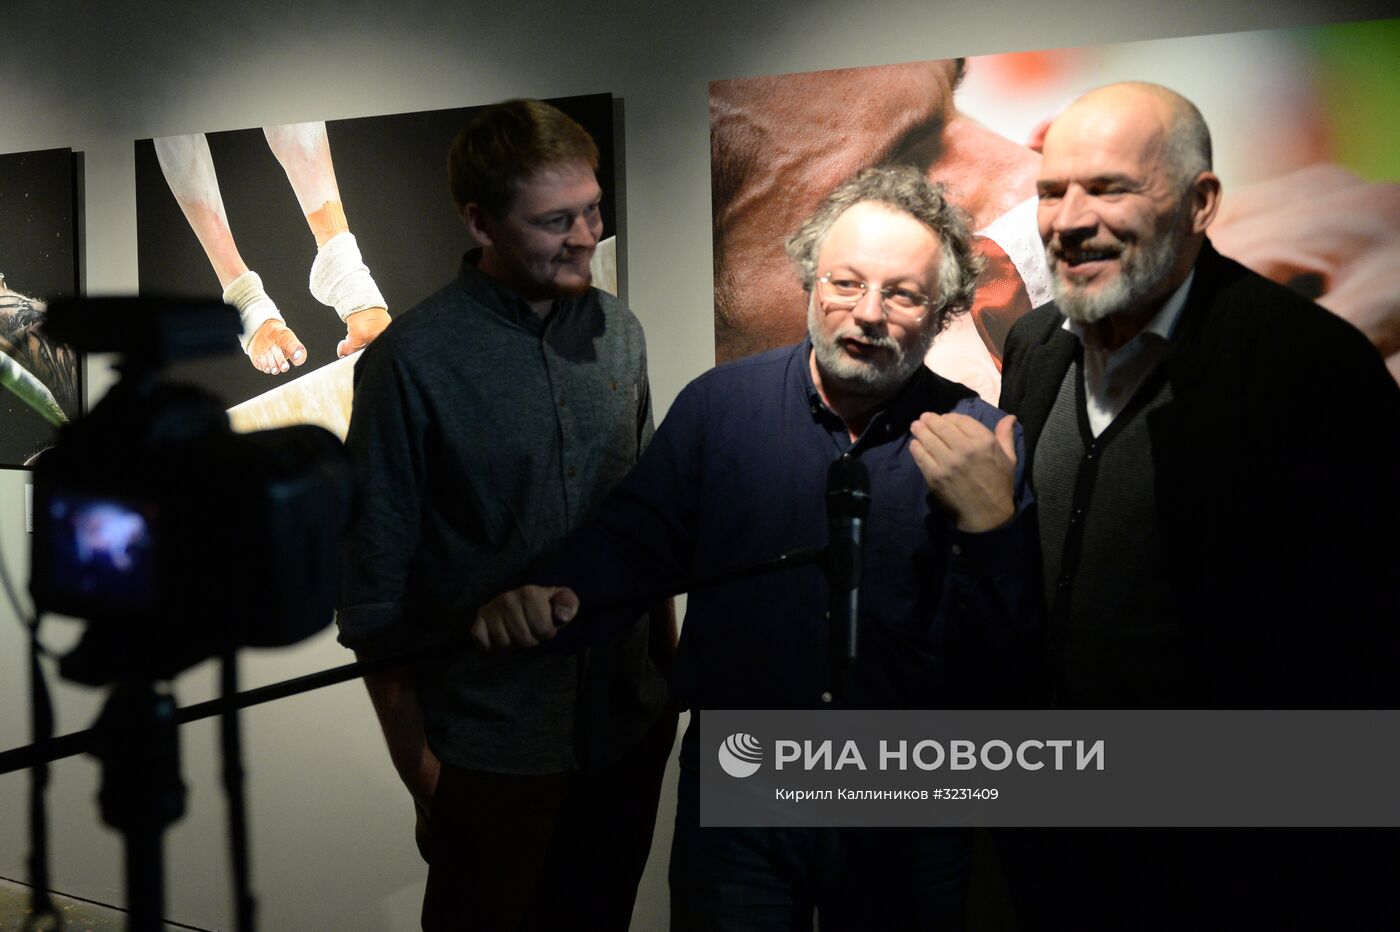 Открытие выставки победителей международного конкурса Istanbul Photo Awards 2017